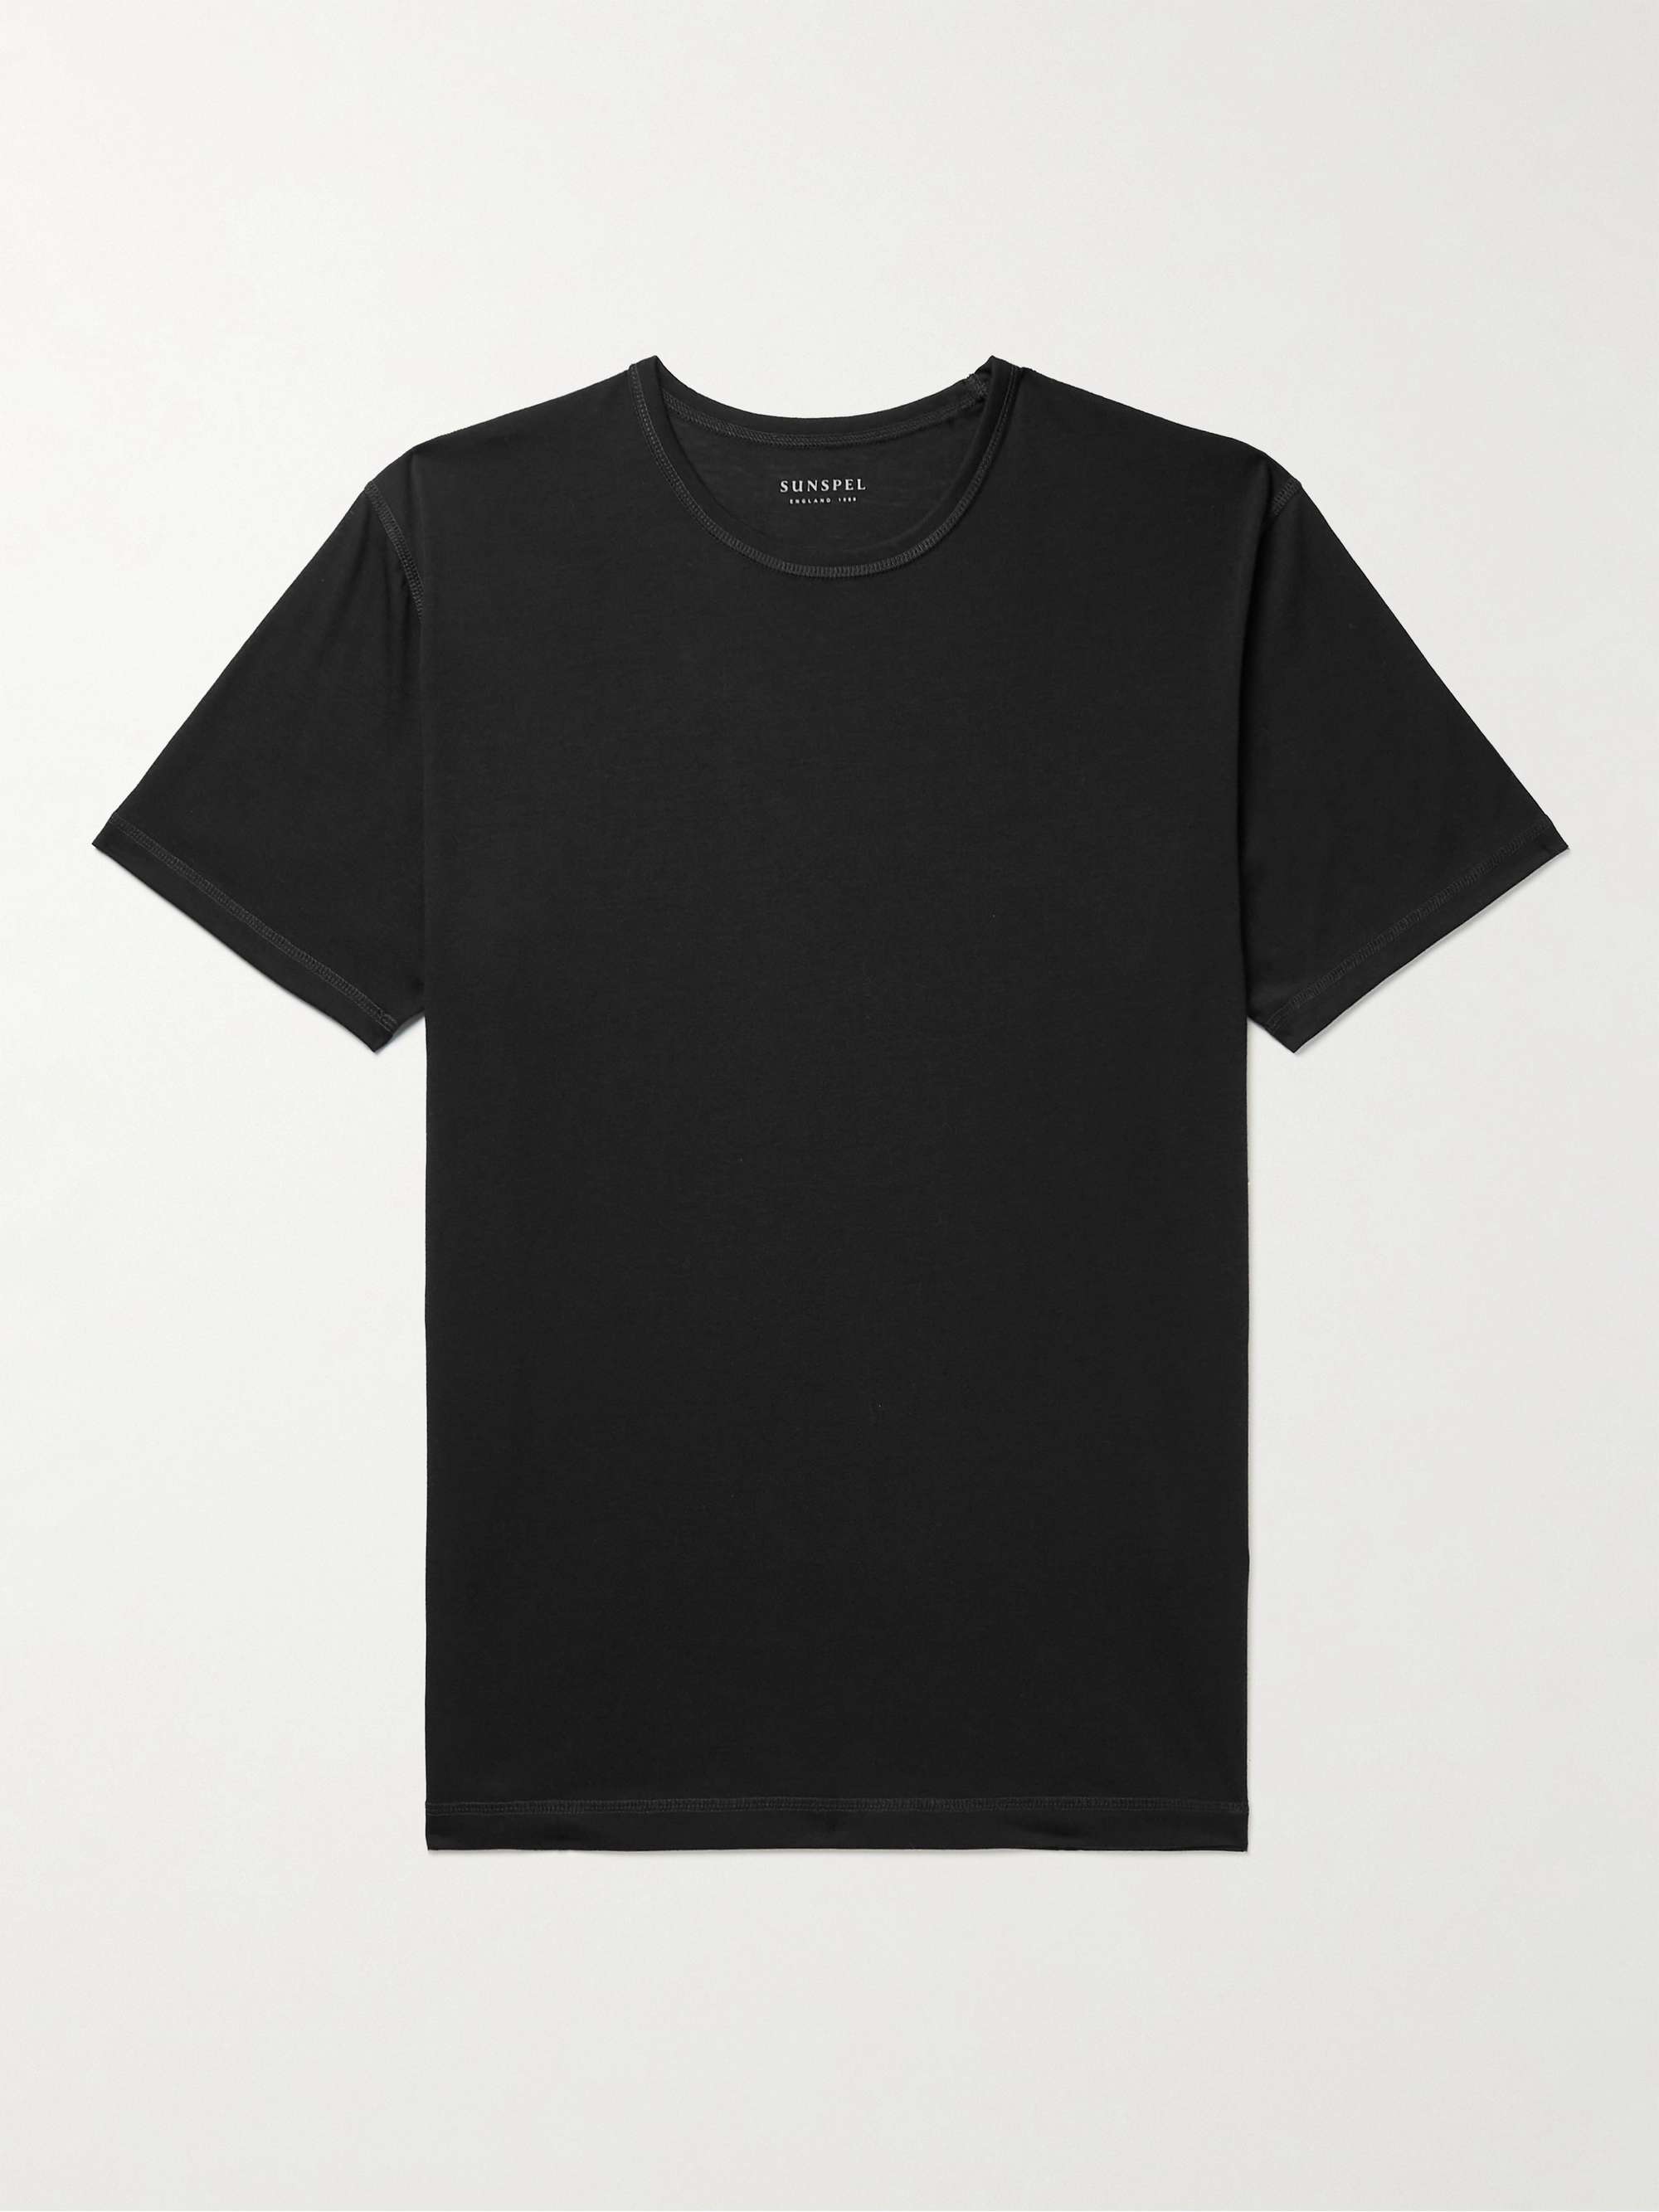 SUNSPEL Dri-Release Jersey T-Shirt